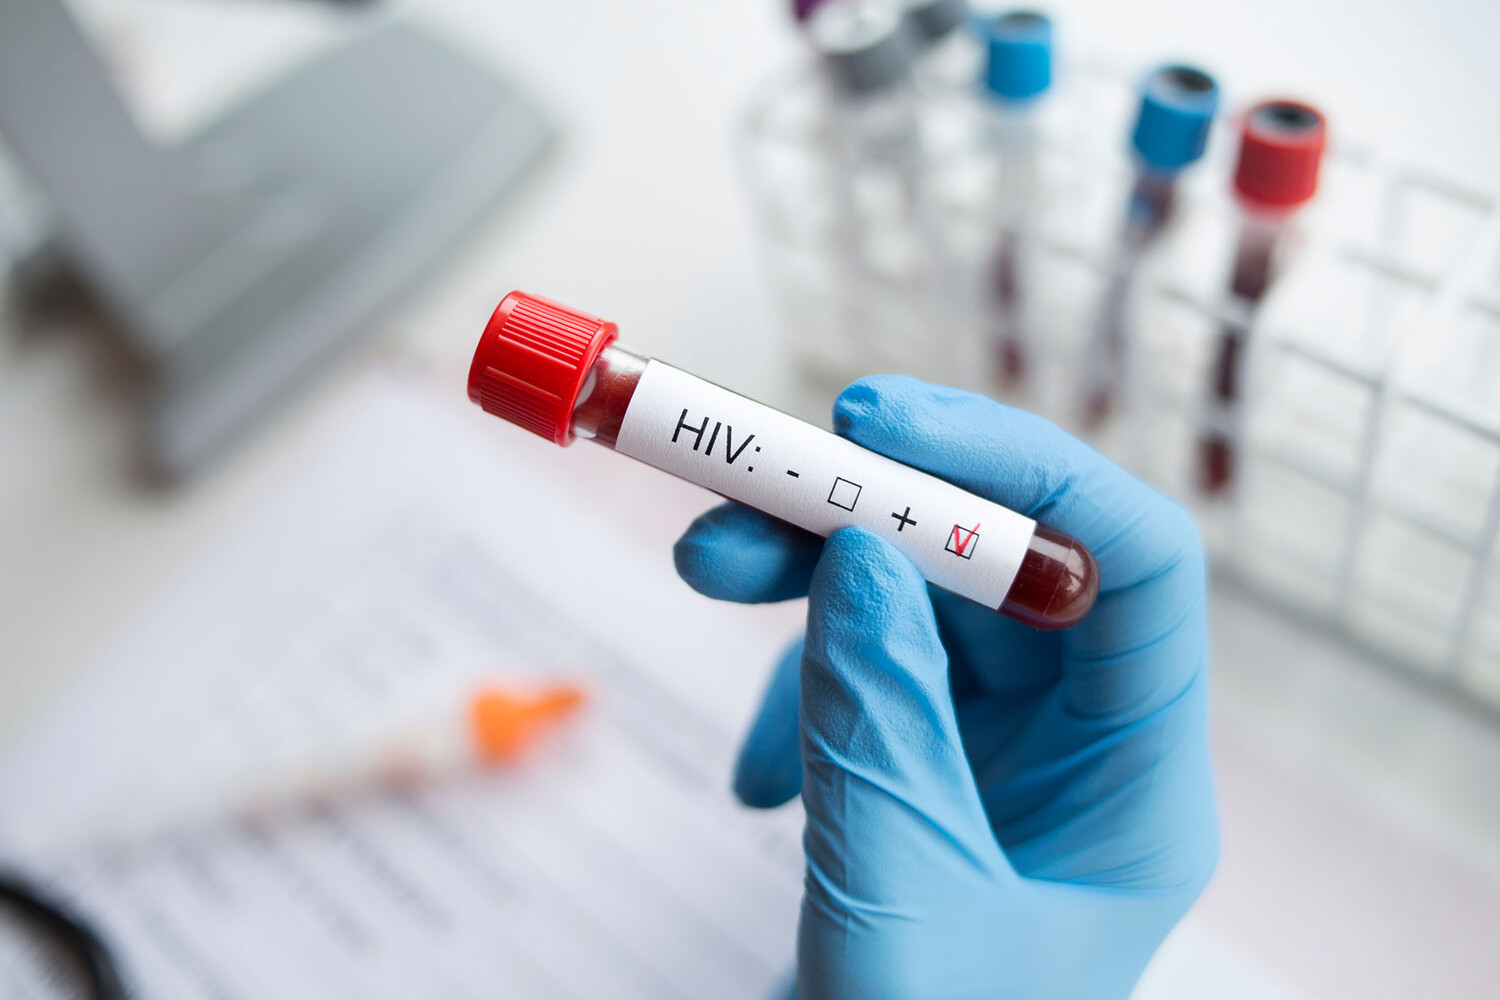 Трем женщинам поставили диагноз ВИЧ после процедур по уходу в Нью-Мексико